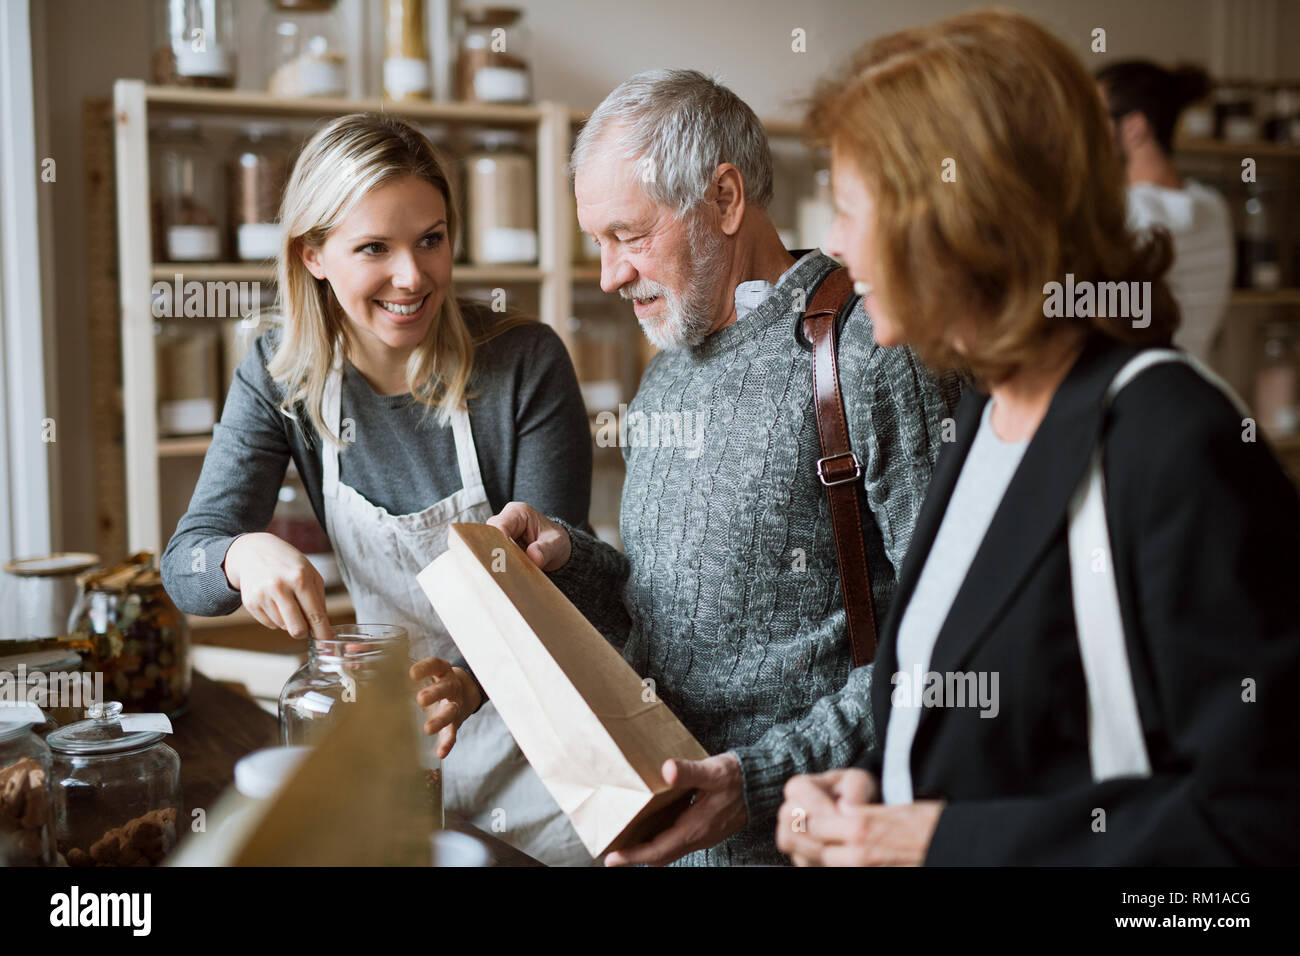 Une femme shop assistant servant un couple dans un magasin sans déchets. Banque D'Images